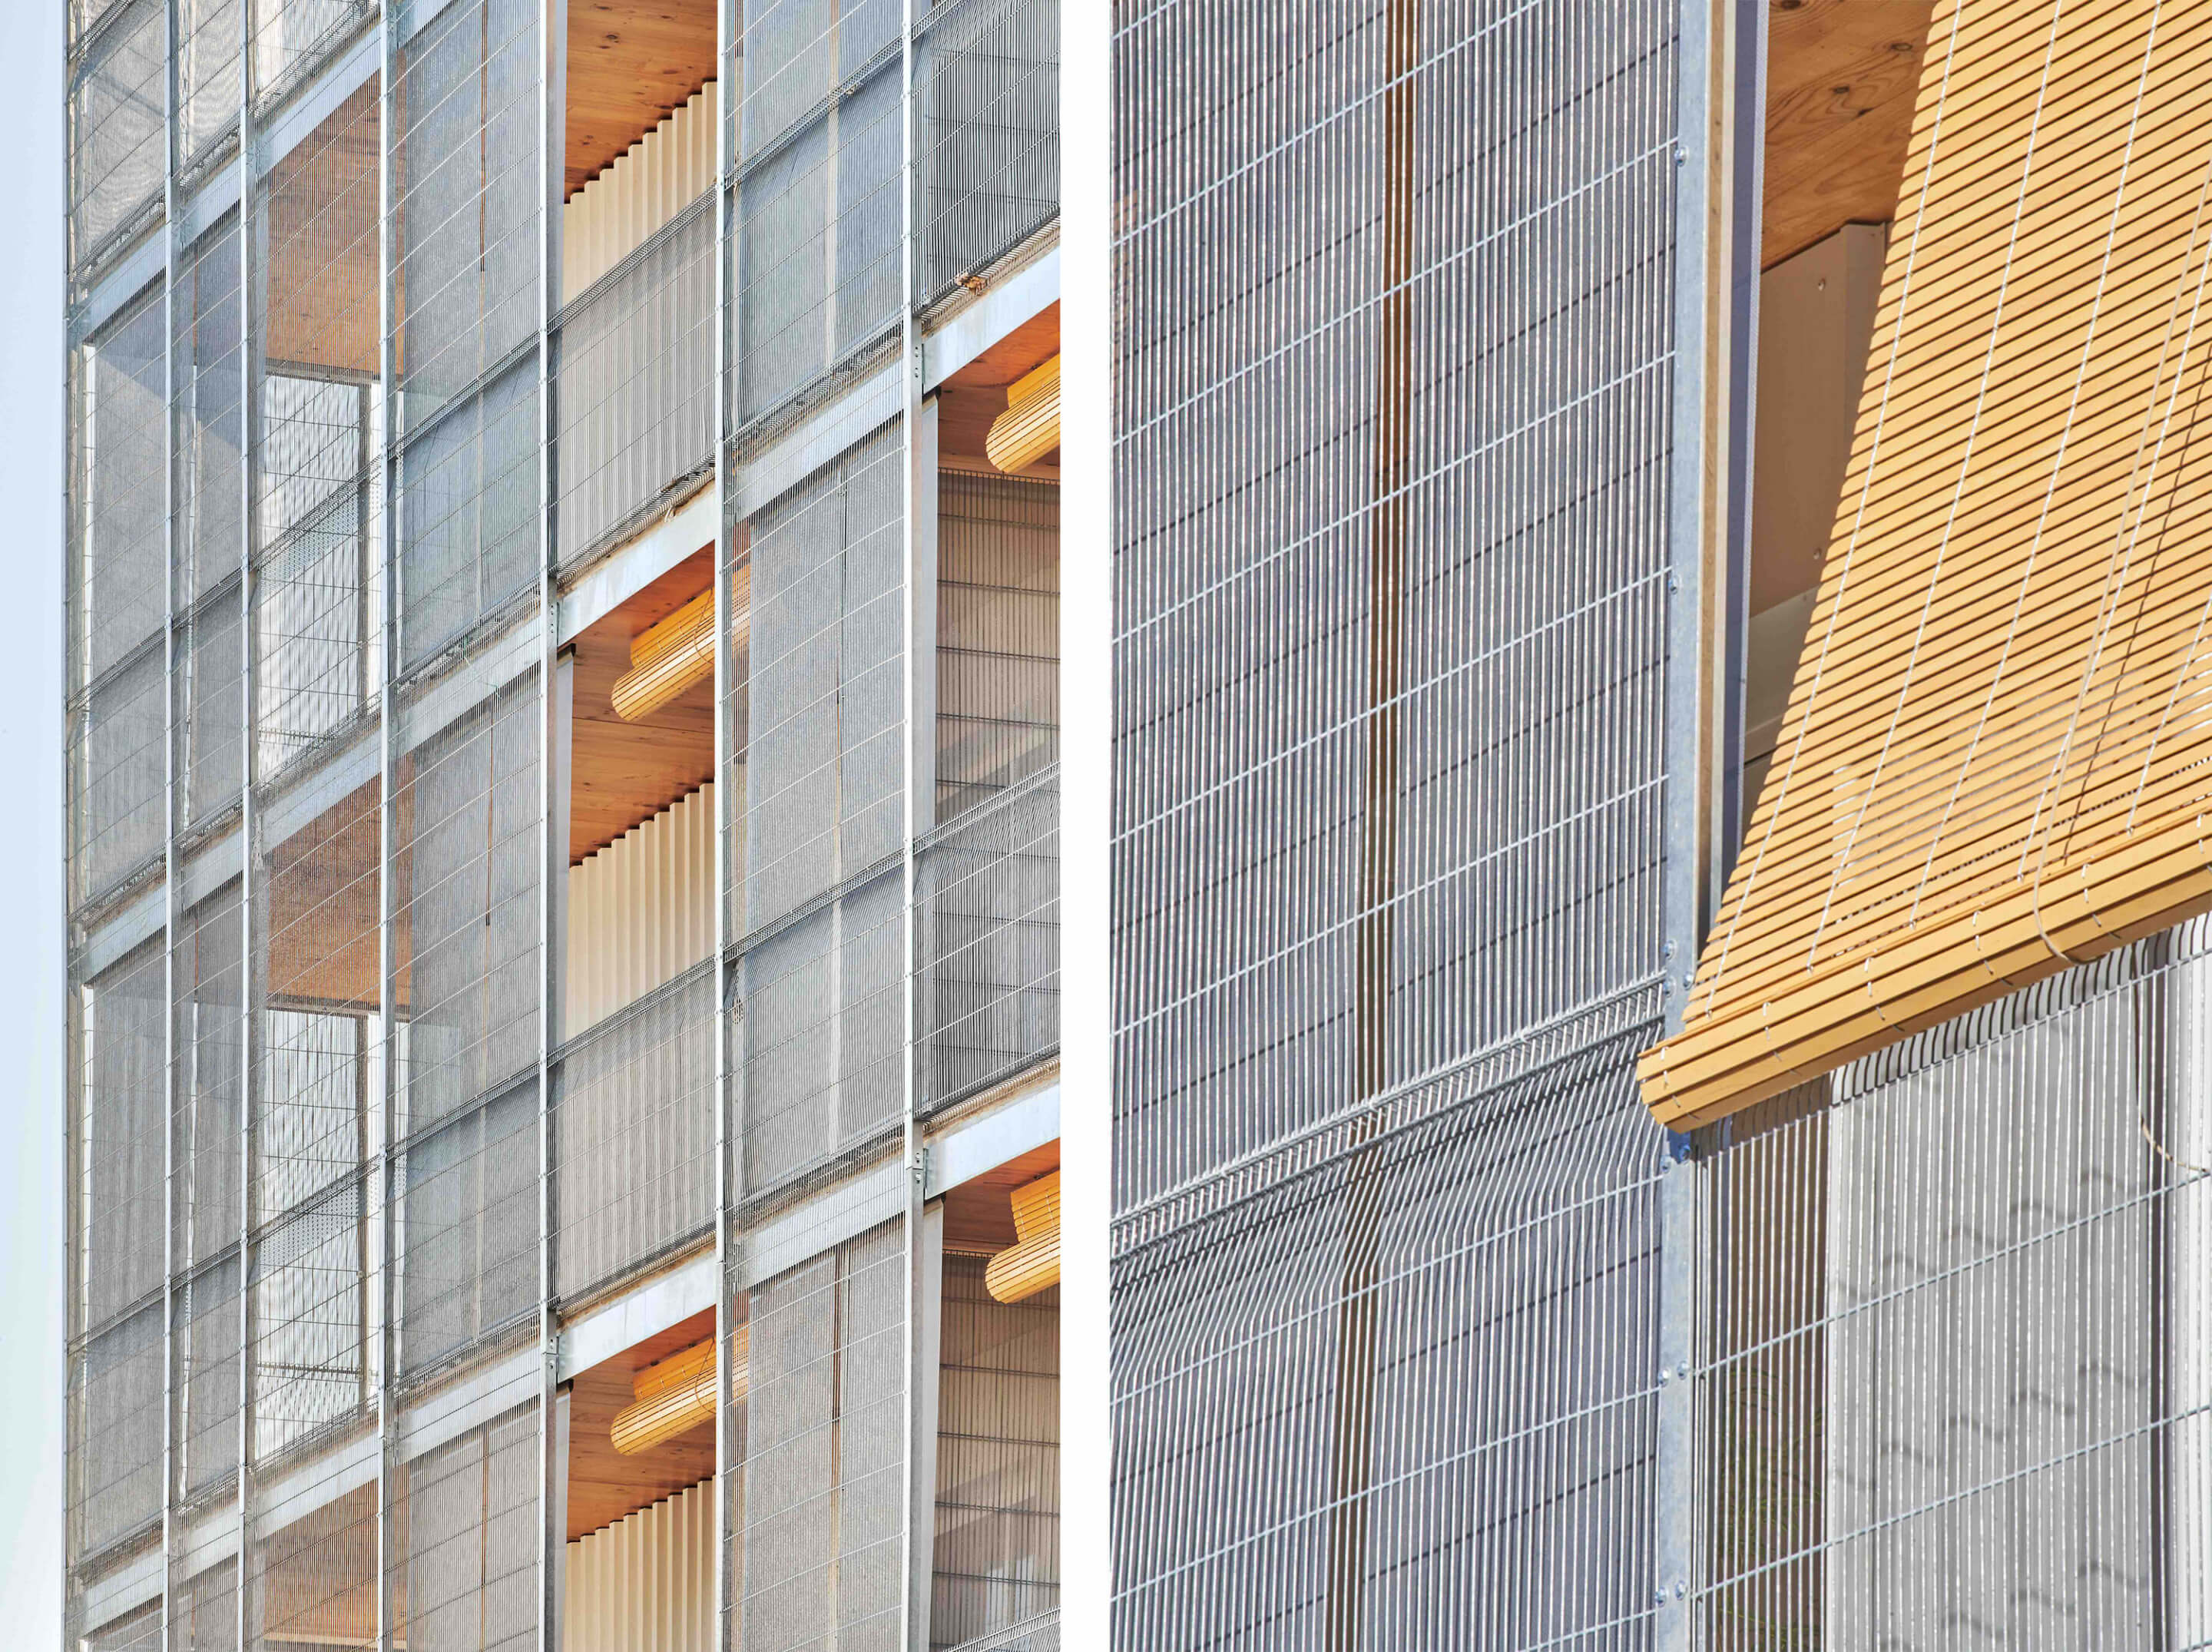 Metal mesh screens on a facade